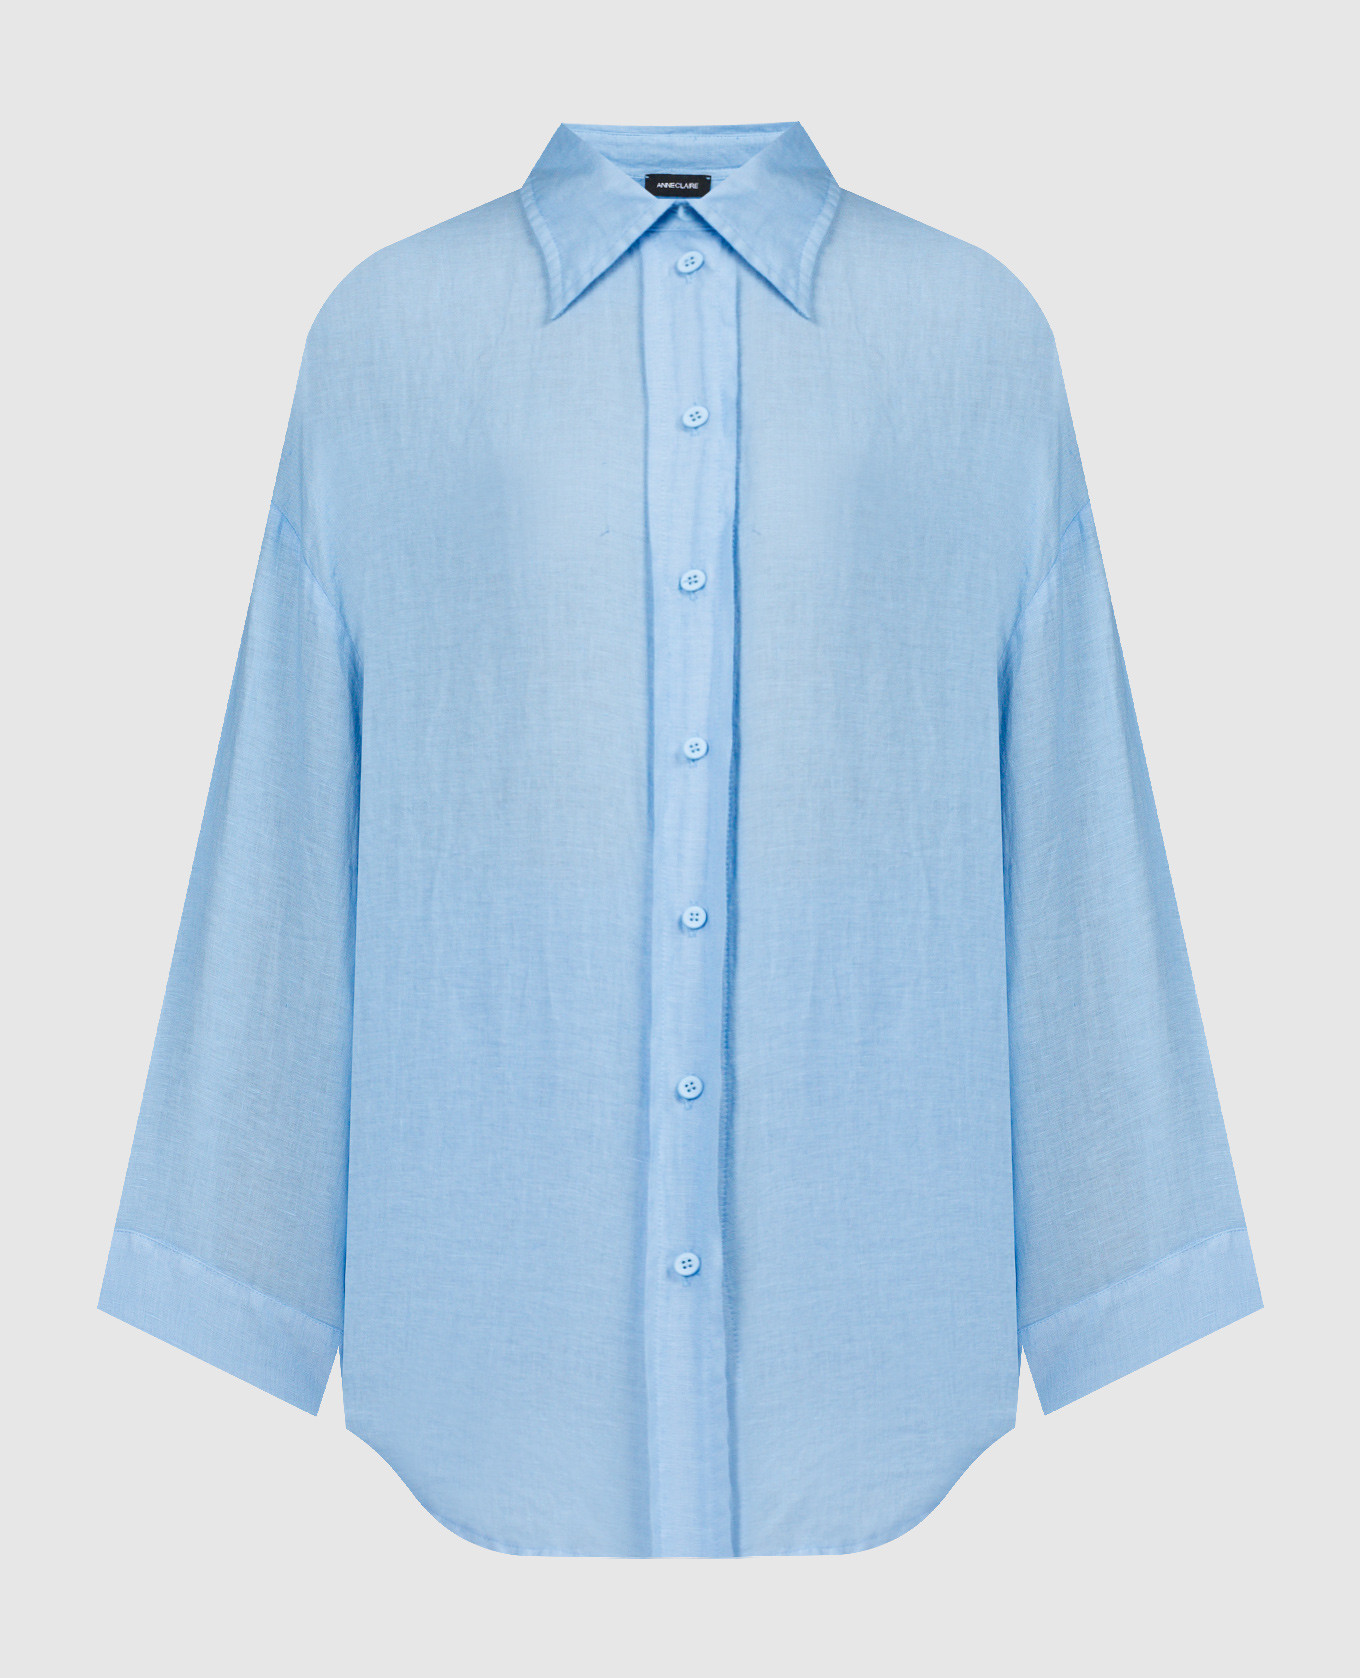 Blue linen shirt